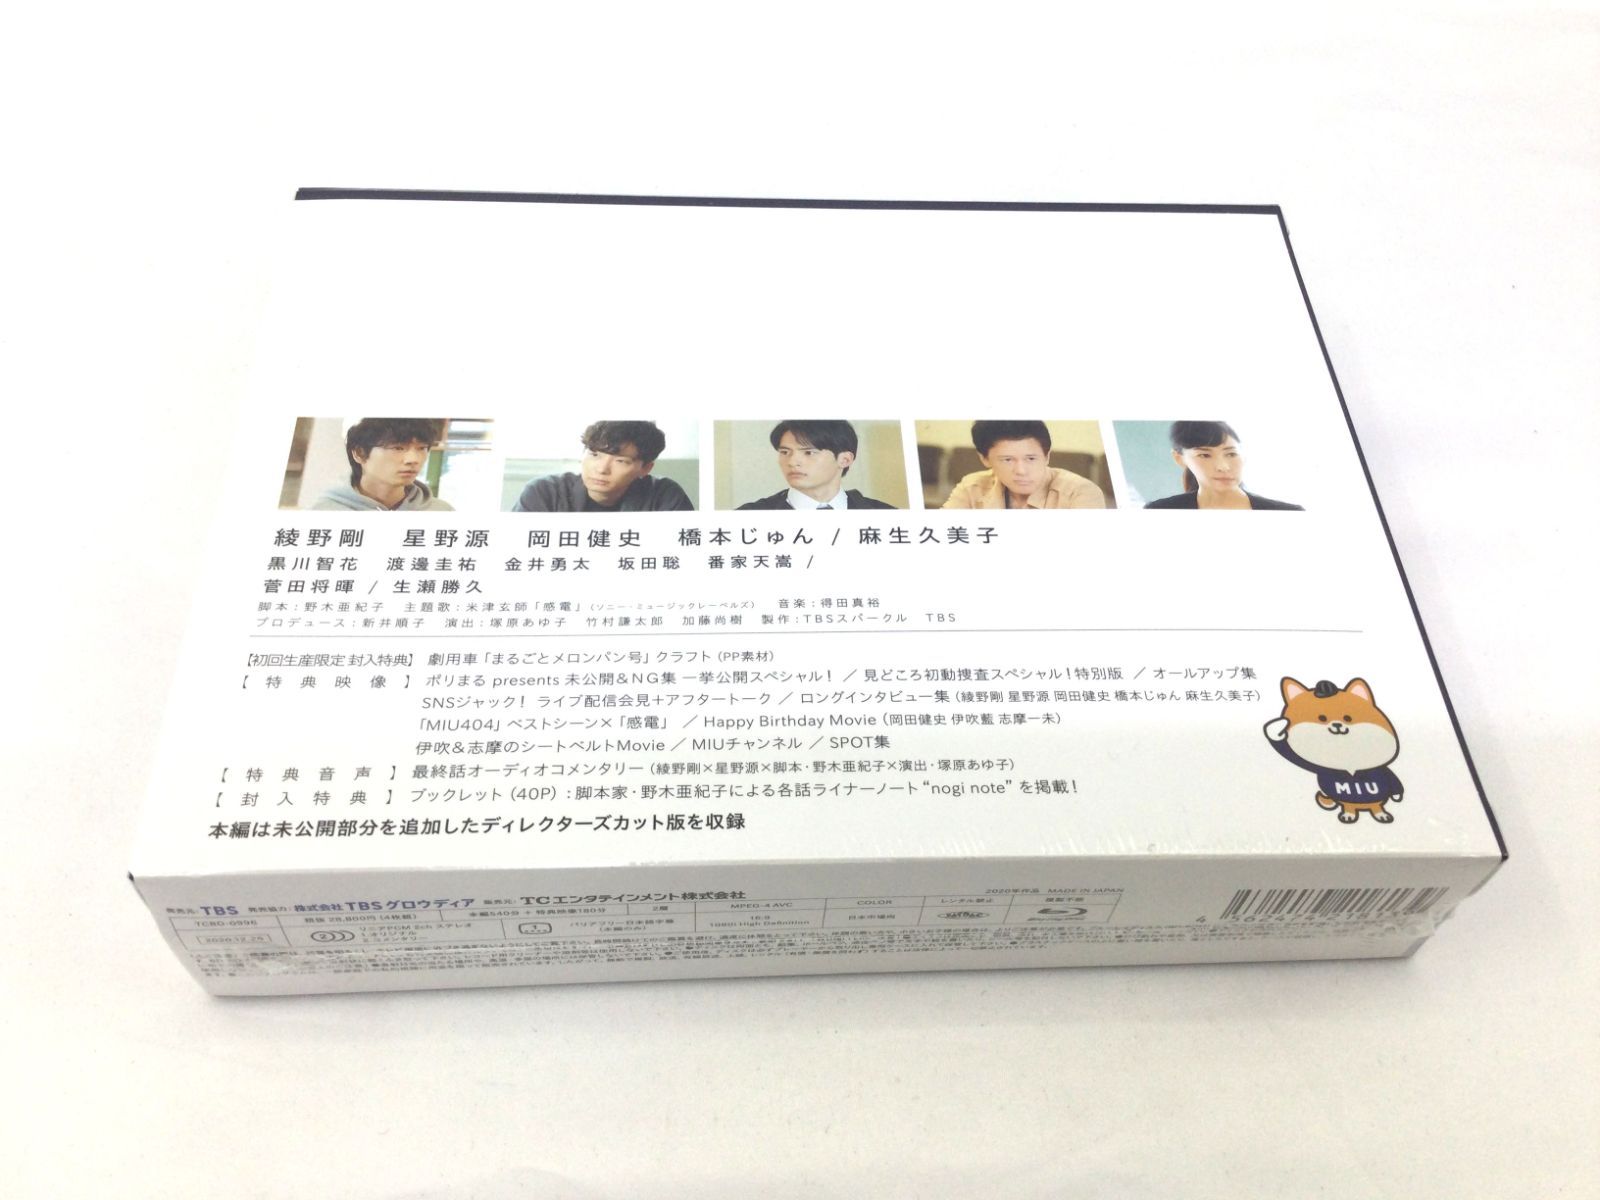 一部予約 MIU404 ディレクターズカット版 DVD-BOX 6枚組 特典映像 綾野 ...